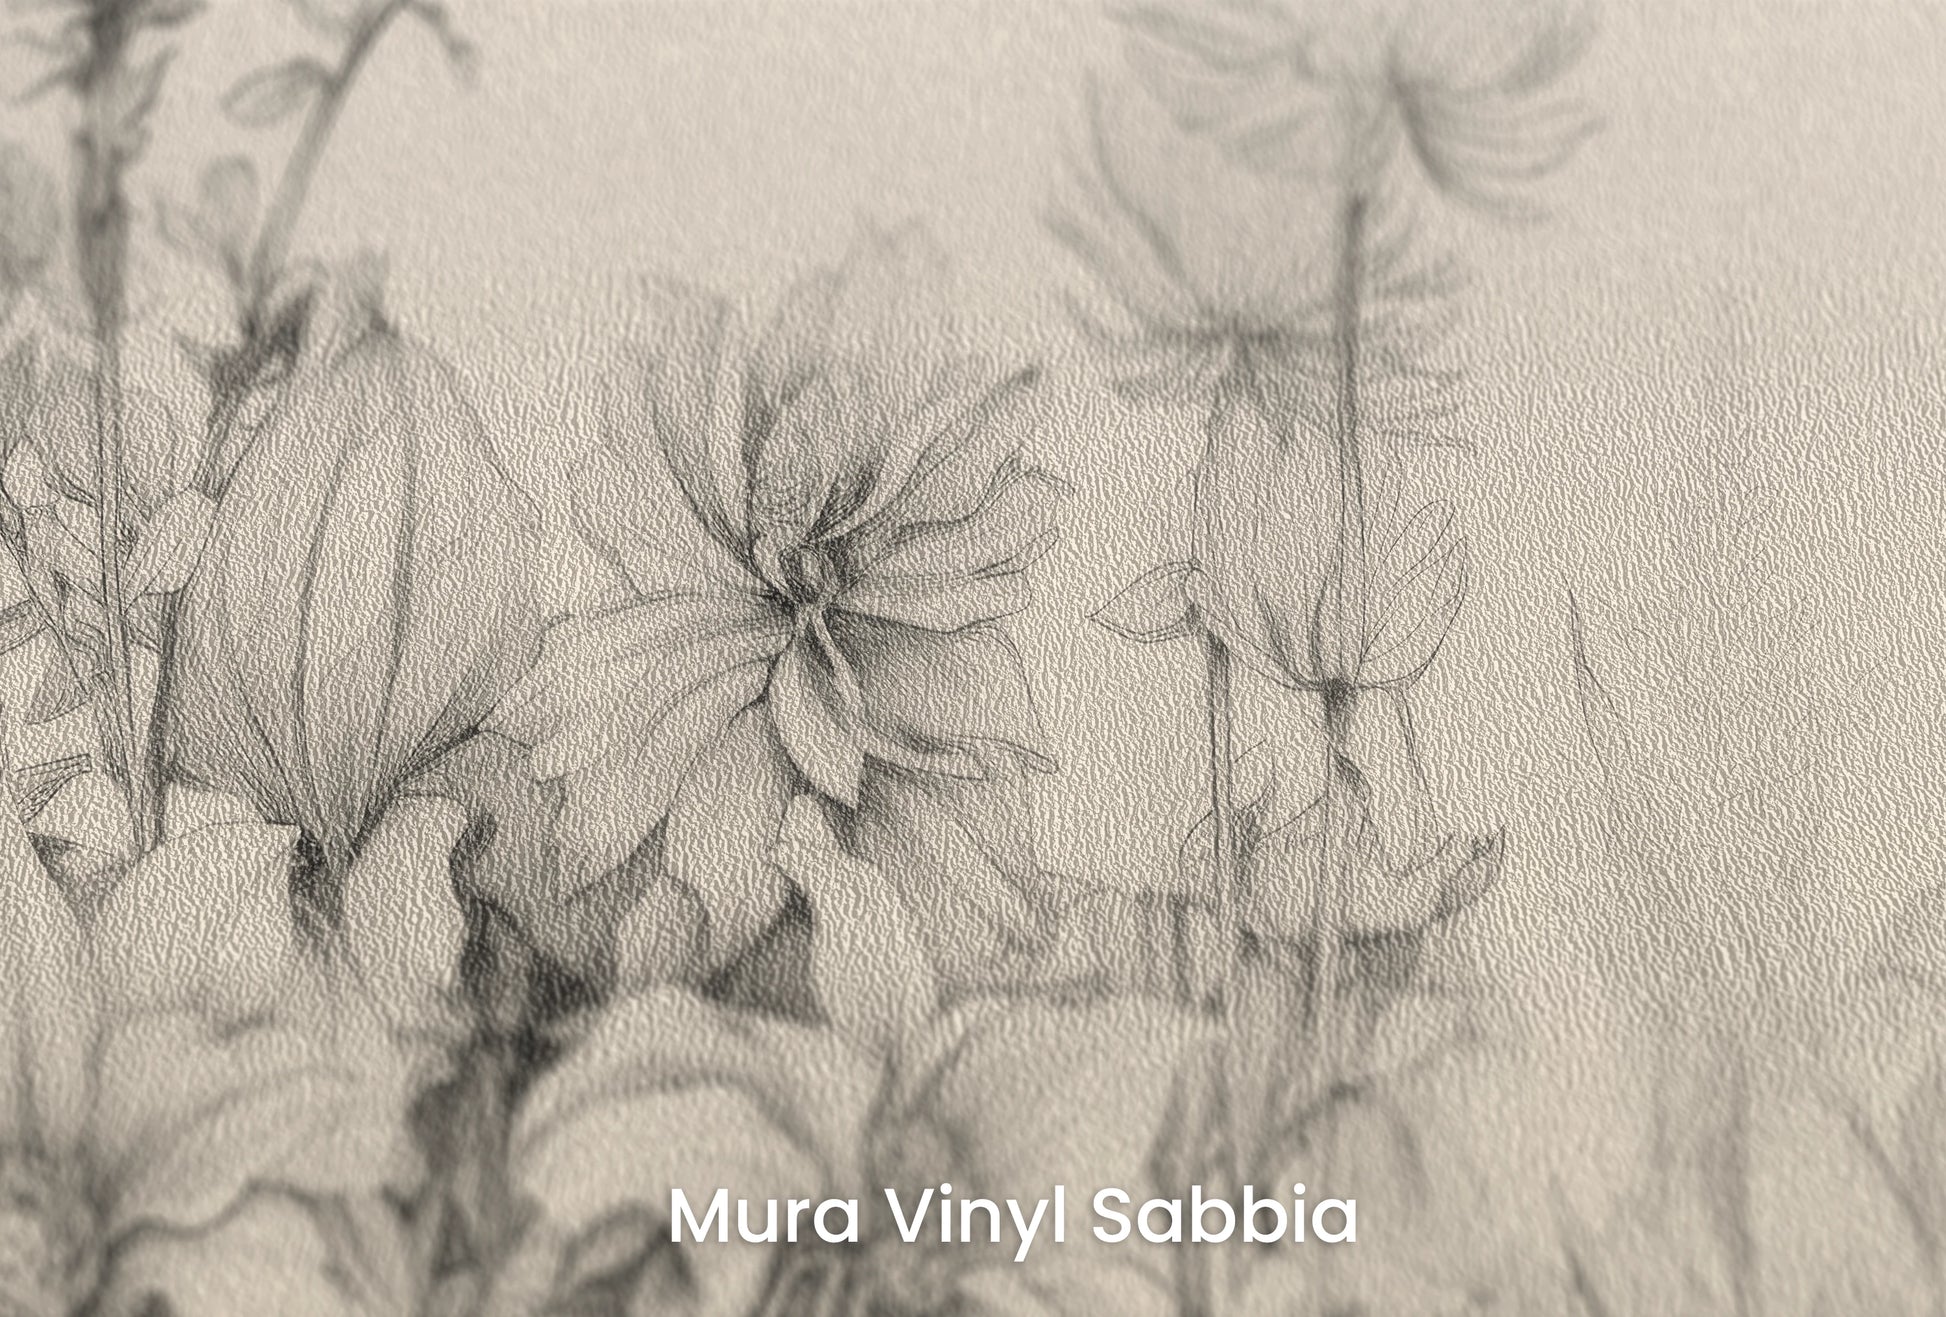 Zbliżenie na artystyczną fototapetę o nazwie Harmonious Blossoms na podłożu Mura Vinyl Sabbia struktura grubego ziarna piasku.